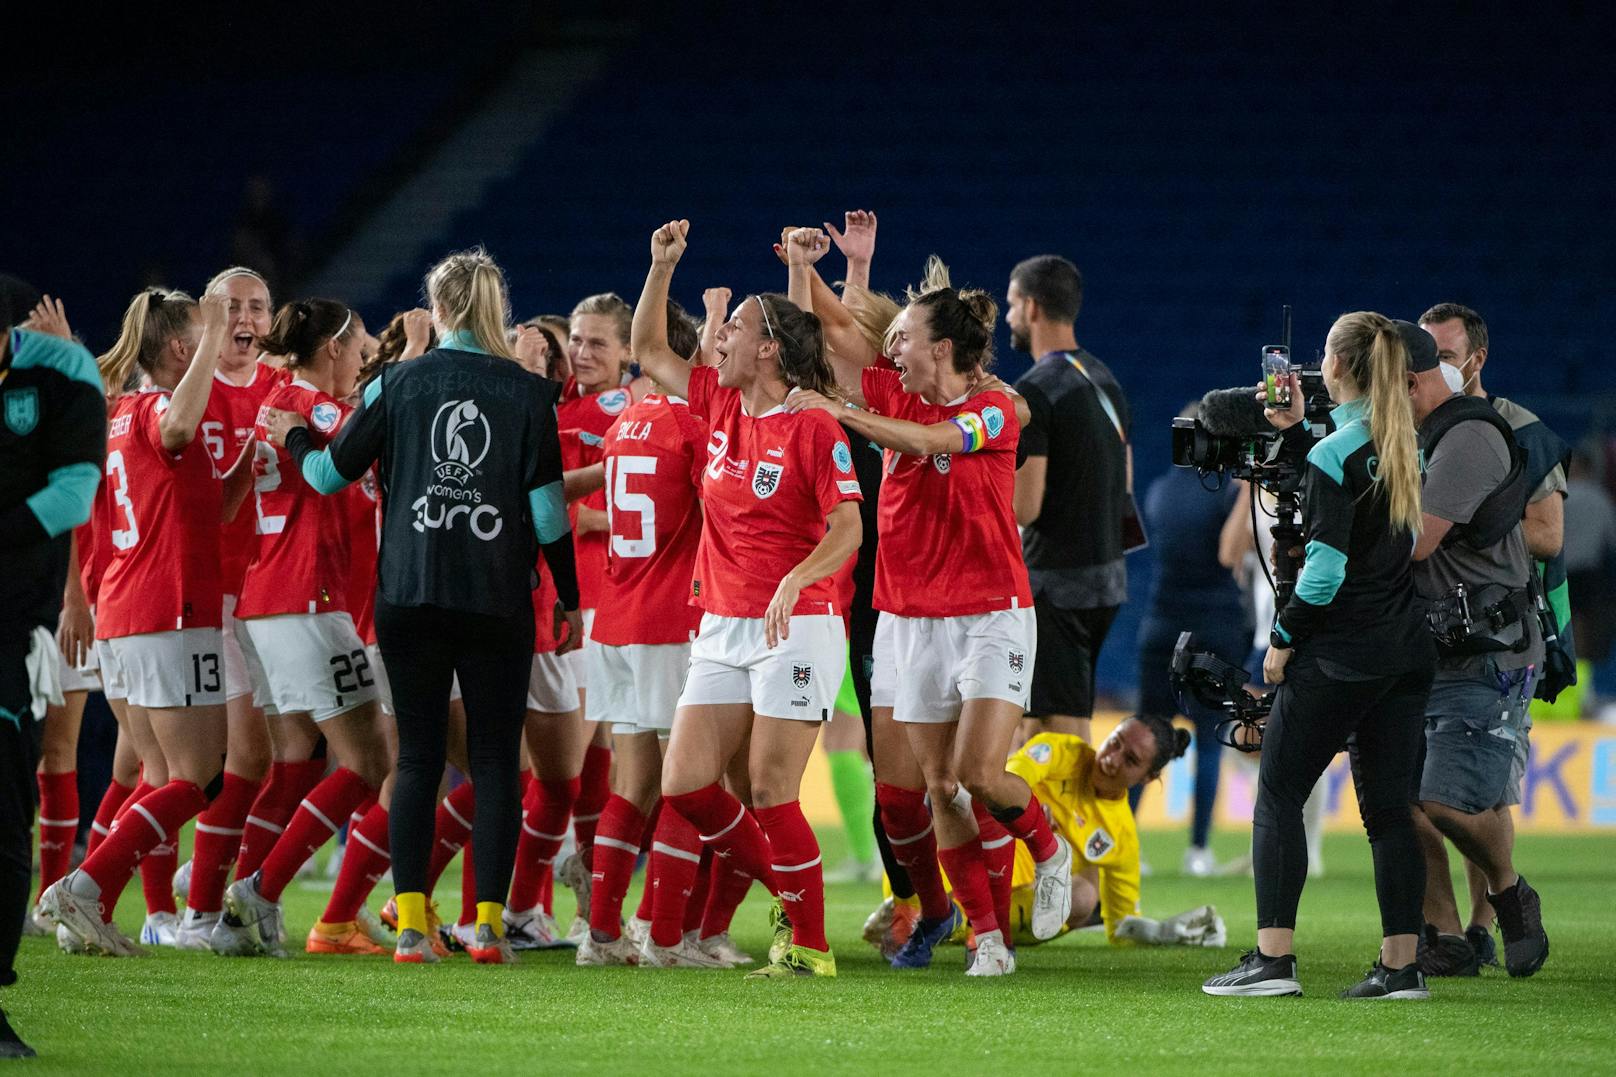 Österreichs Frauenteam steht im EM-Viertelfinale: Michael Ludwig bittet das "gebührend" zu feiern!